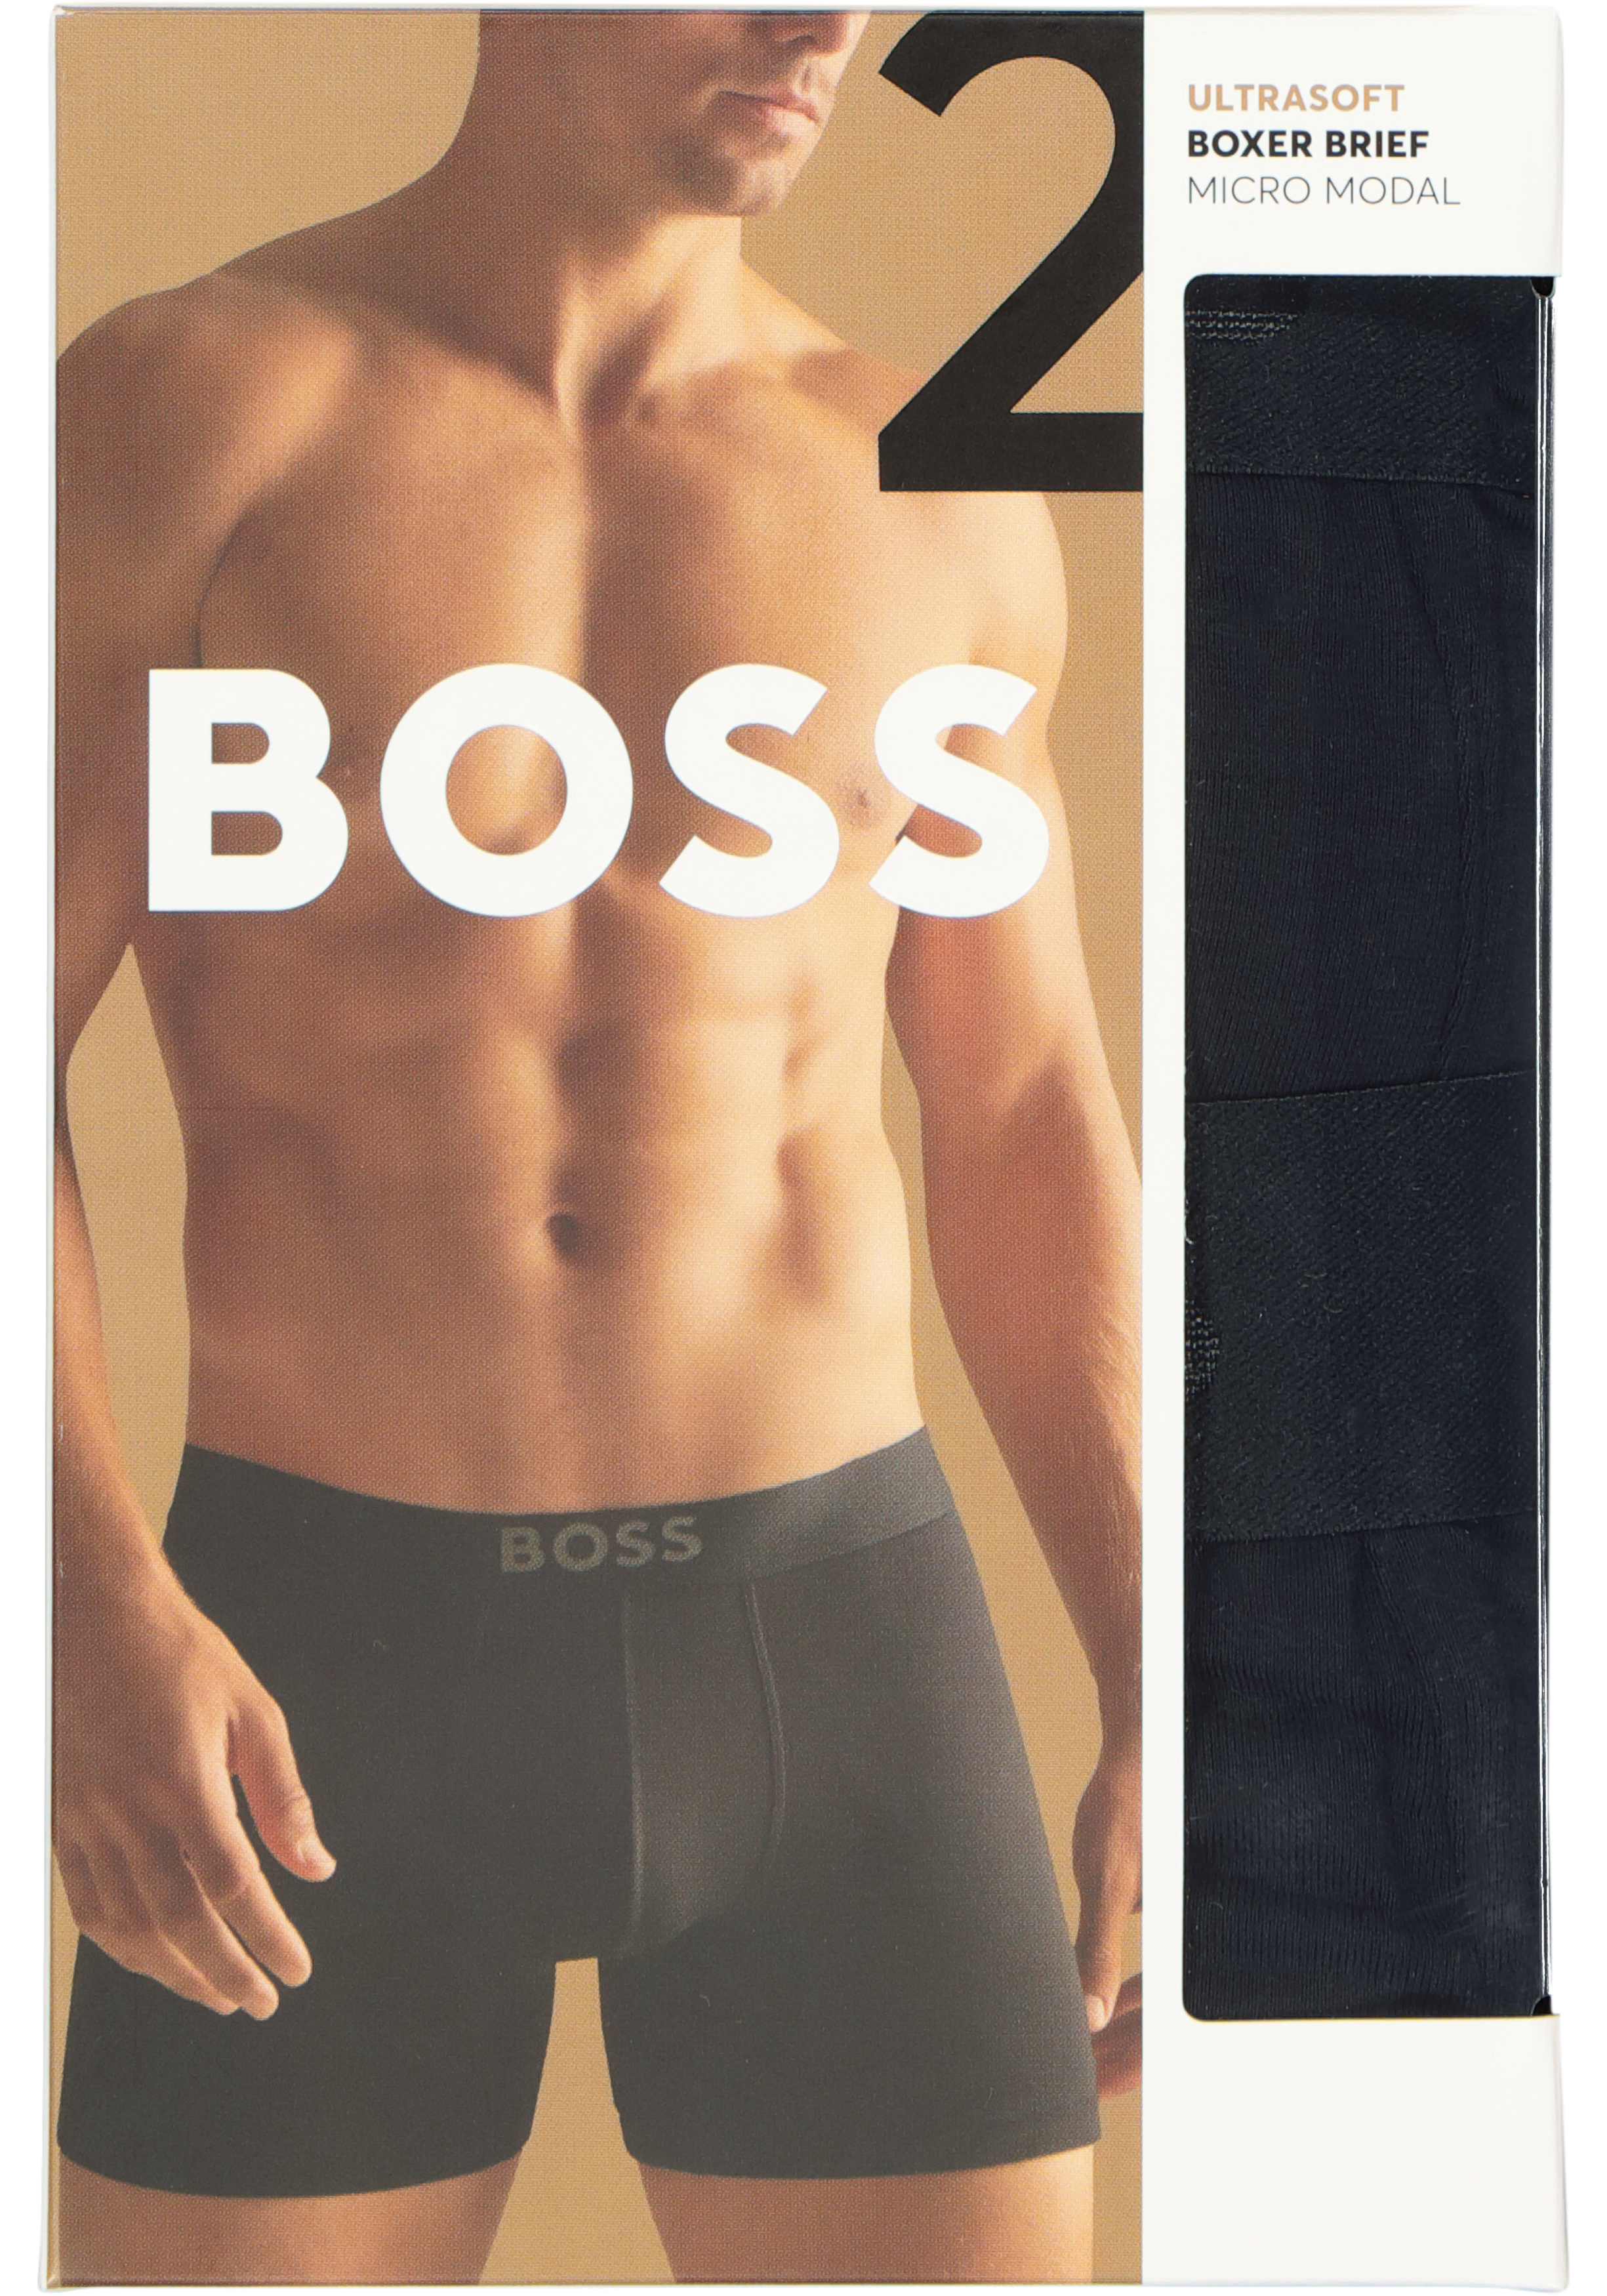 HUGO BOSS Ultrasoft boxer briefs (2-pack), heren boxers normale lengte -  SALE met kortingen tot 70%